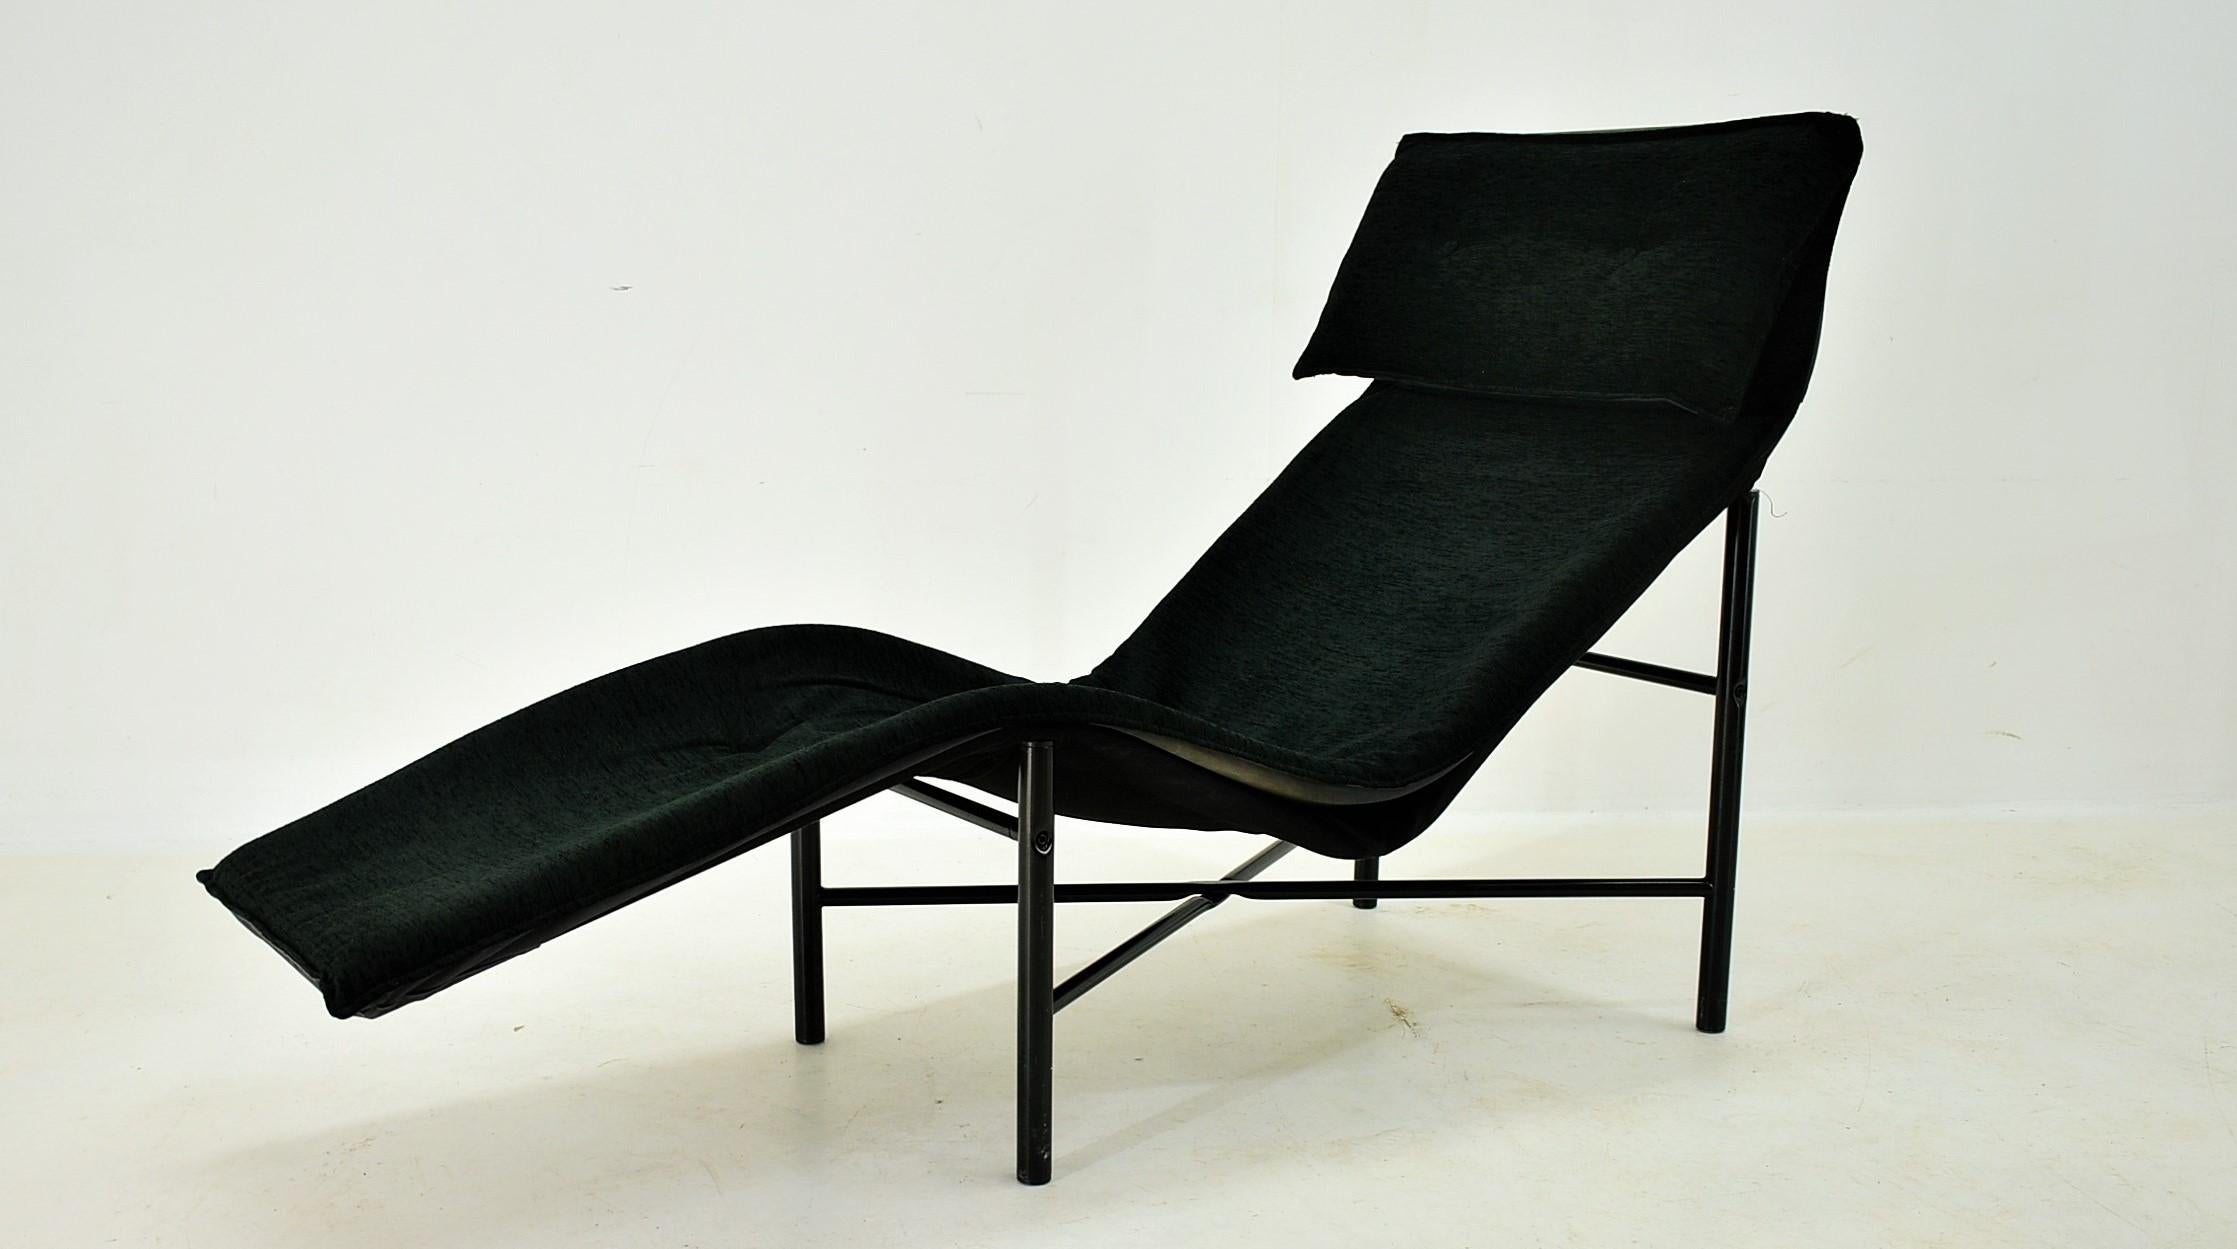 Cette chaise longue vintage de Tord Bjorklund, 1970 Suède, allie confort et design intemporel.
Le revêtement de la chaise longue a été recouvert d'un tissu noir et présente une bonne.
De plus, la base a été fabriquée en tube d'acier laqué gris et